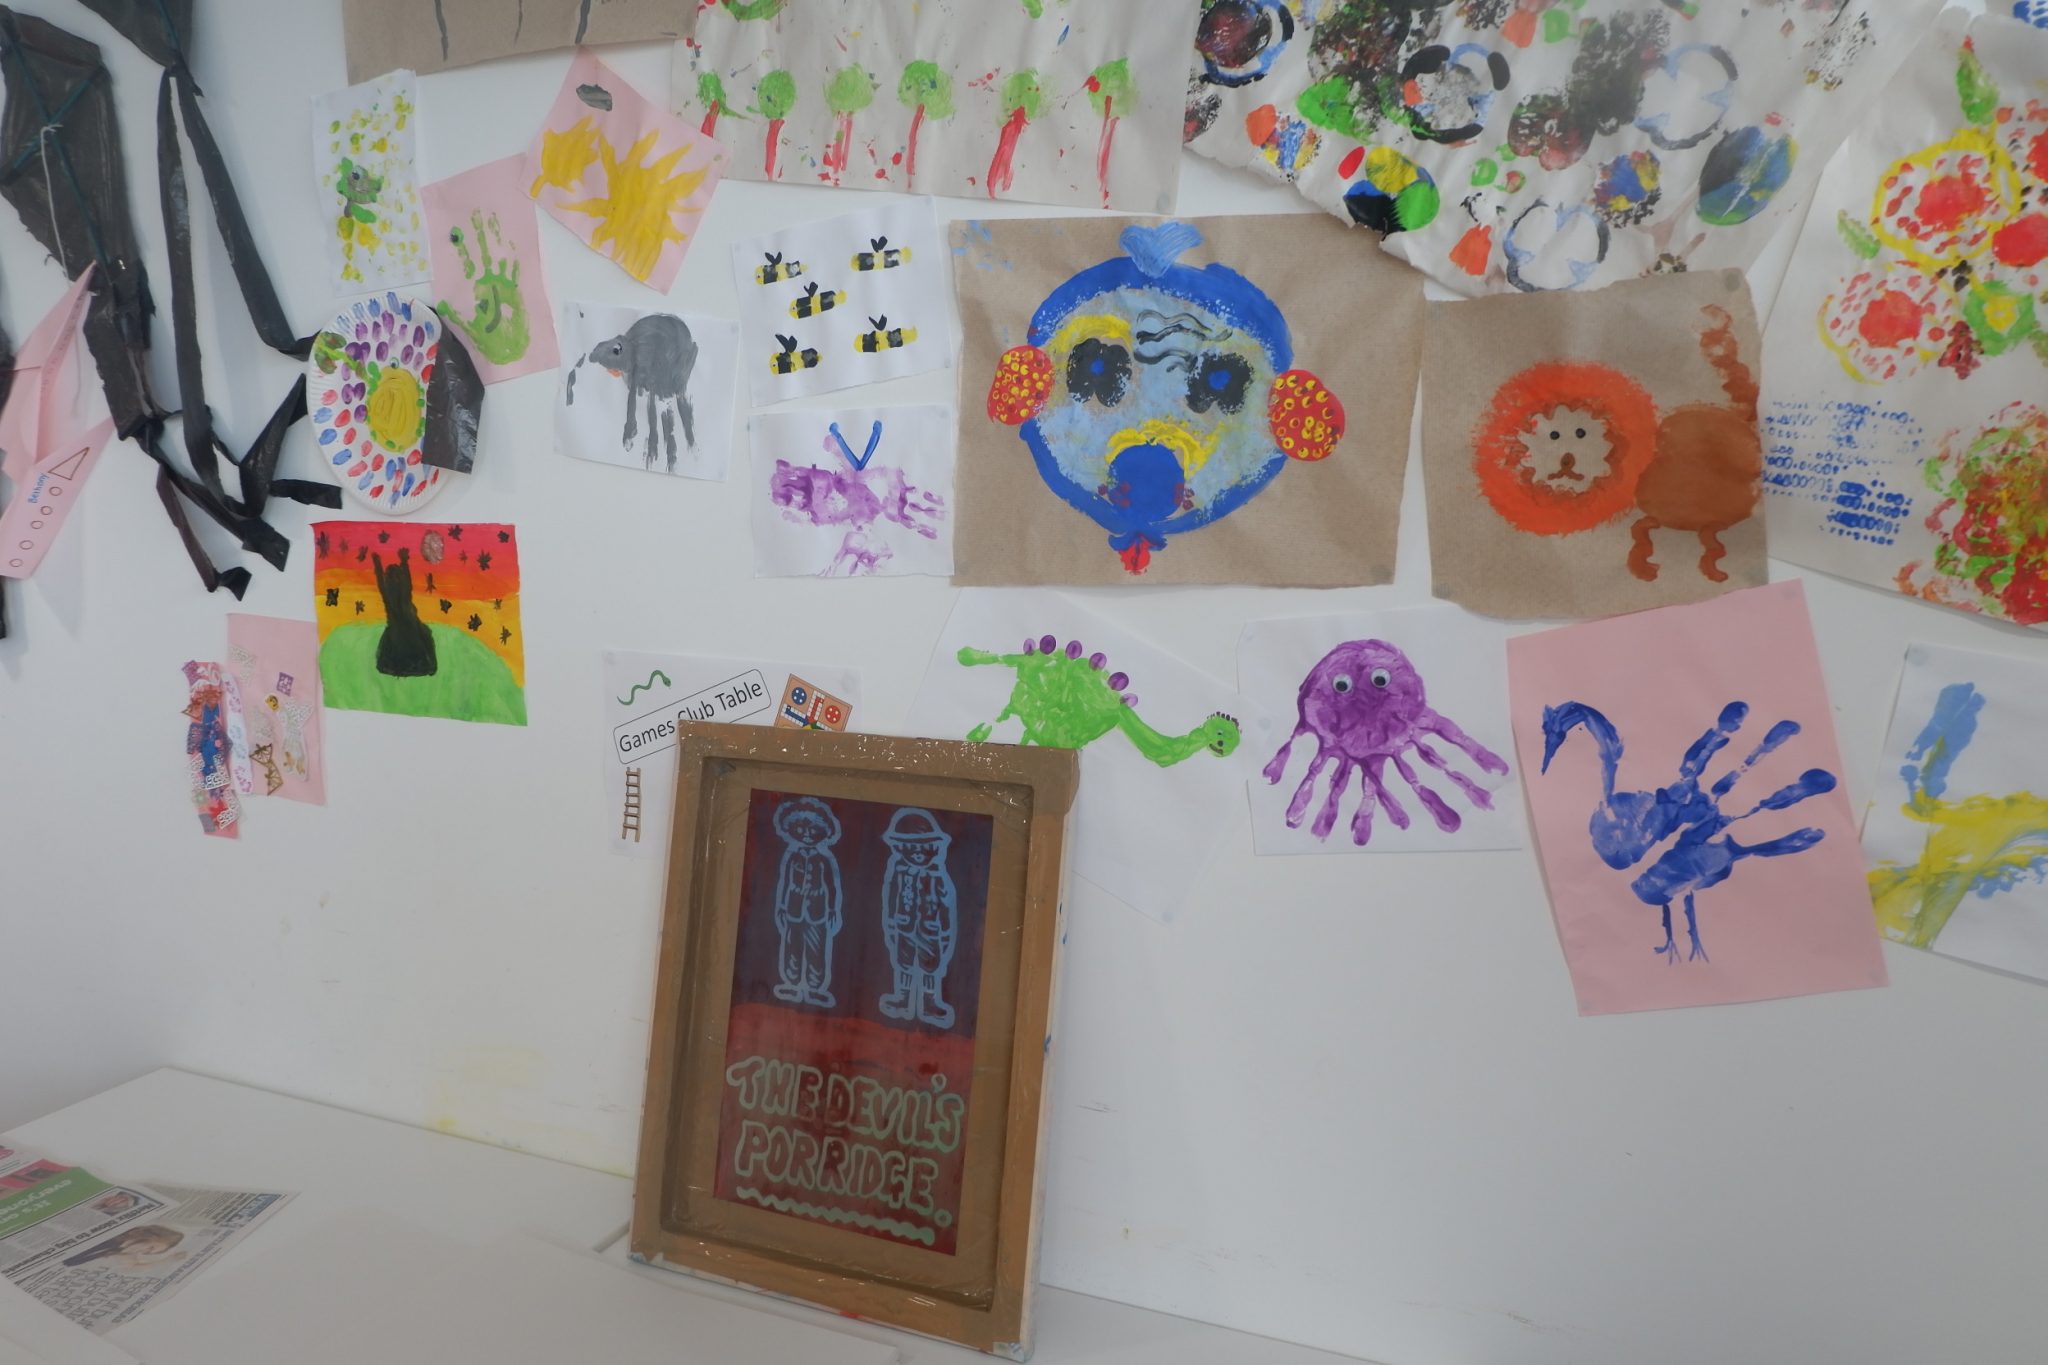 Some children's artwork on a wall in The Devil's Porridge Museum.